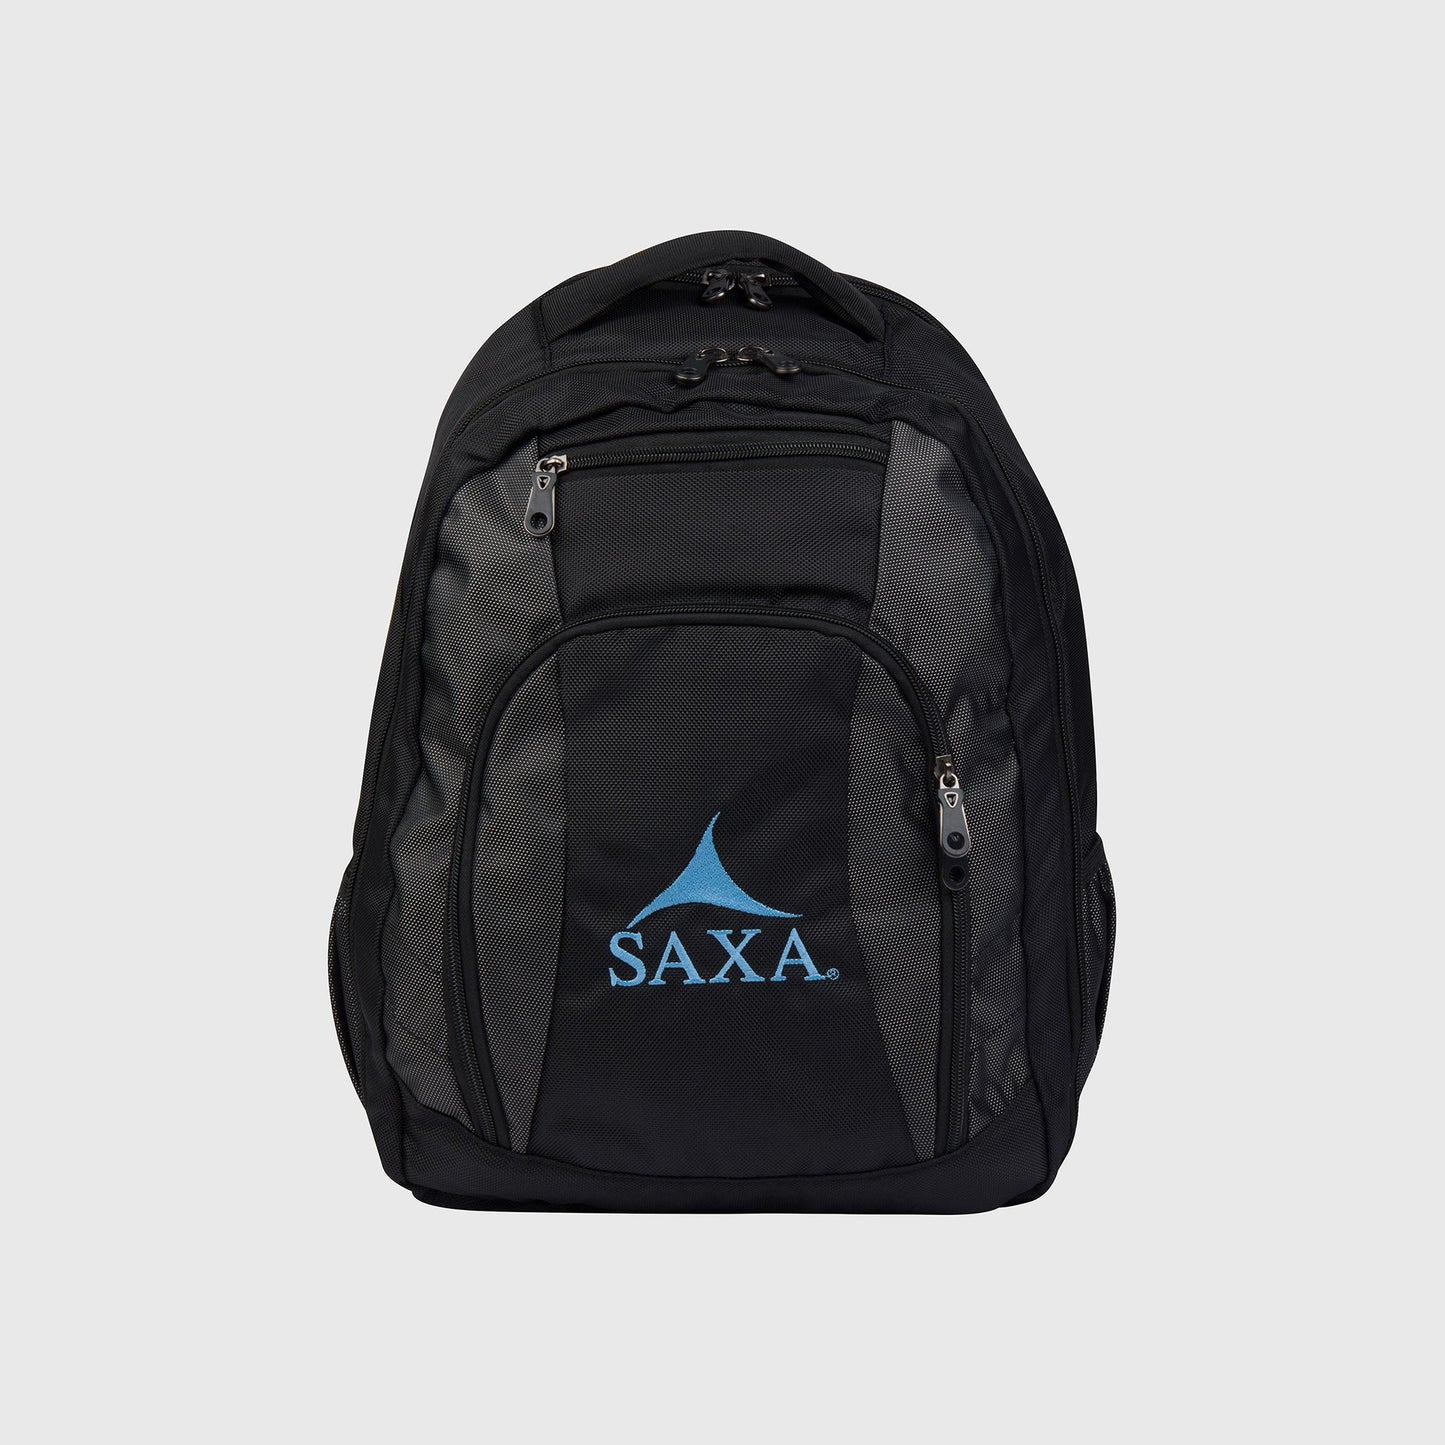 SAXA Backpack